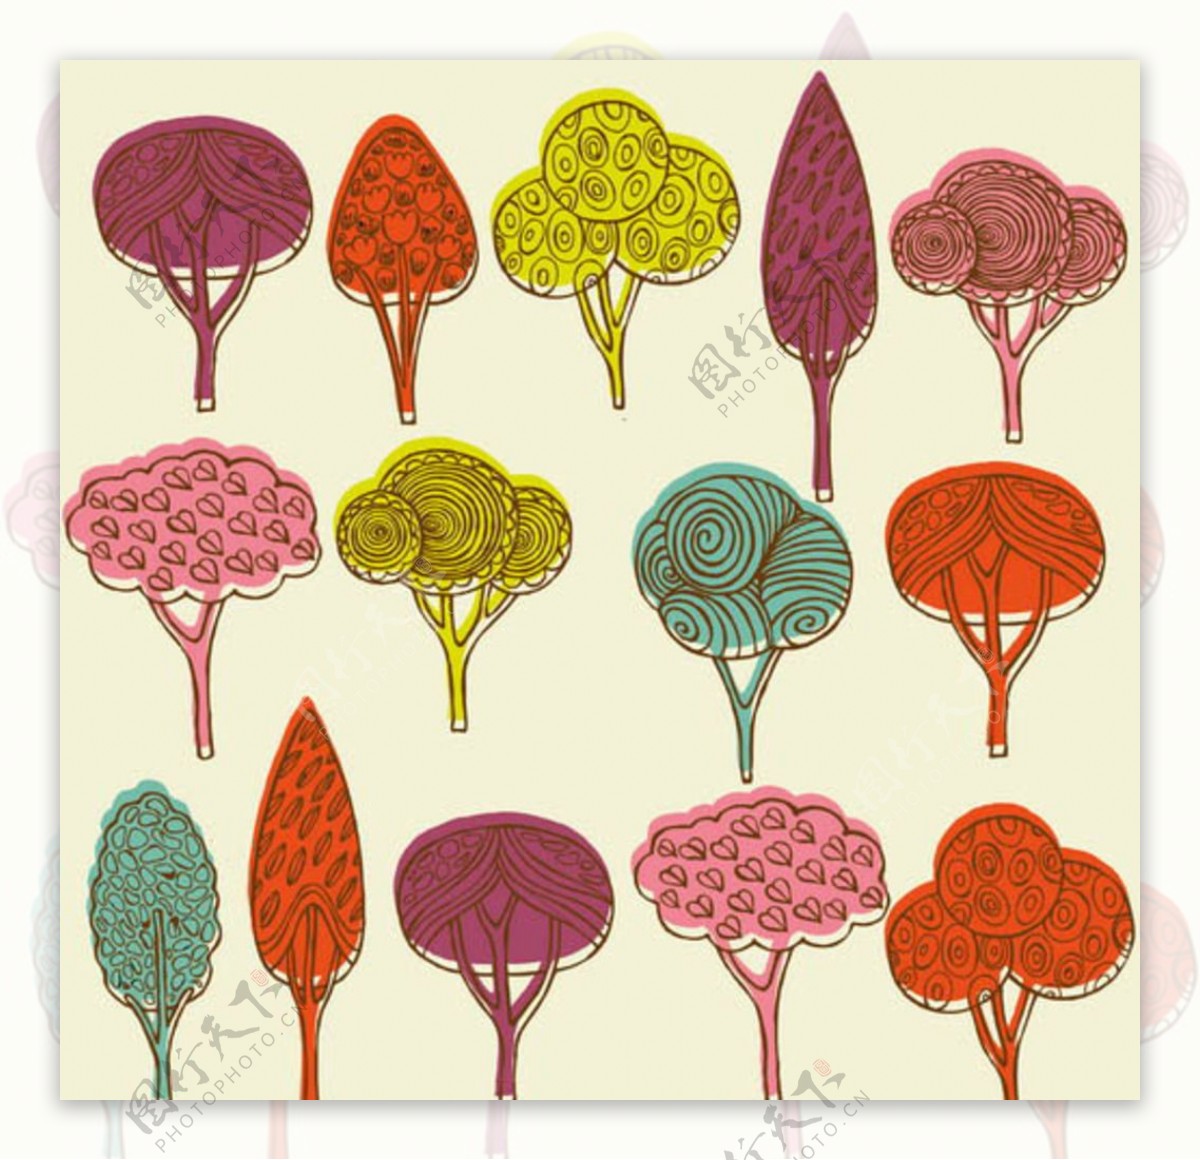 树木与树叶等主题创意设计图片